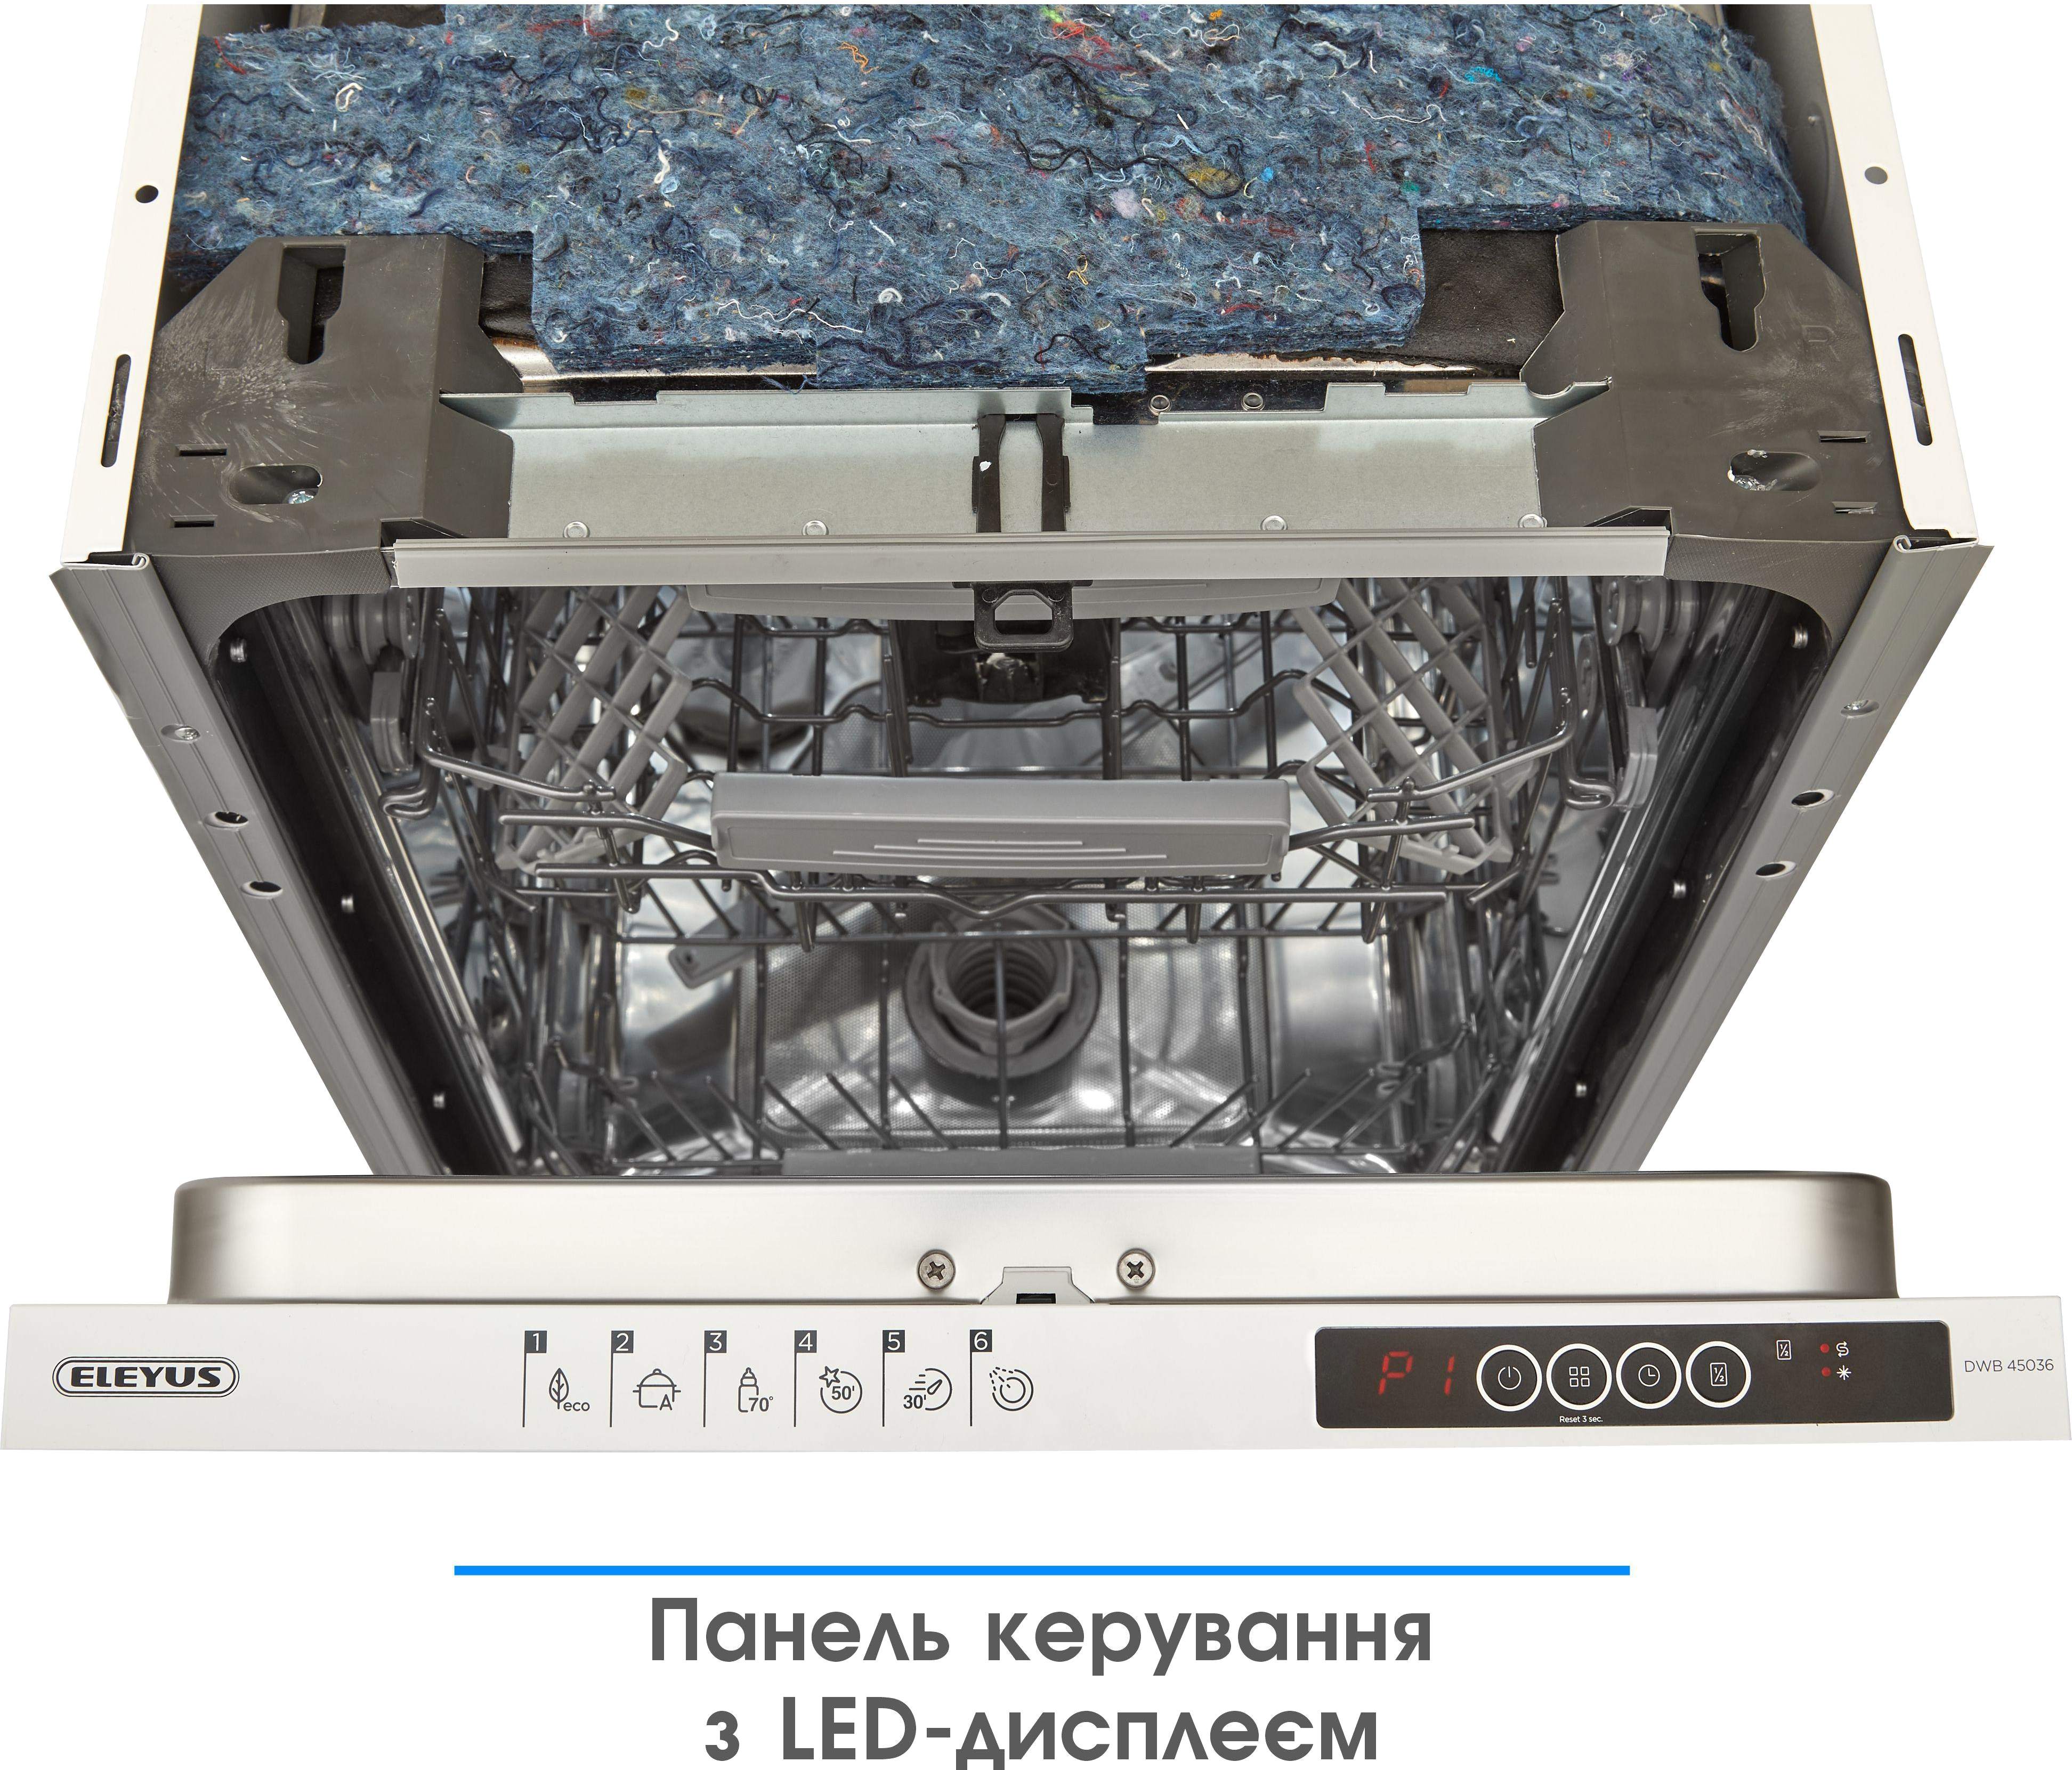 Посудомоечная машина Eleyus DWB 45036 инструкция - изображение 6